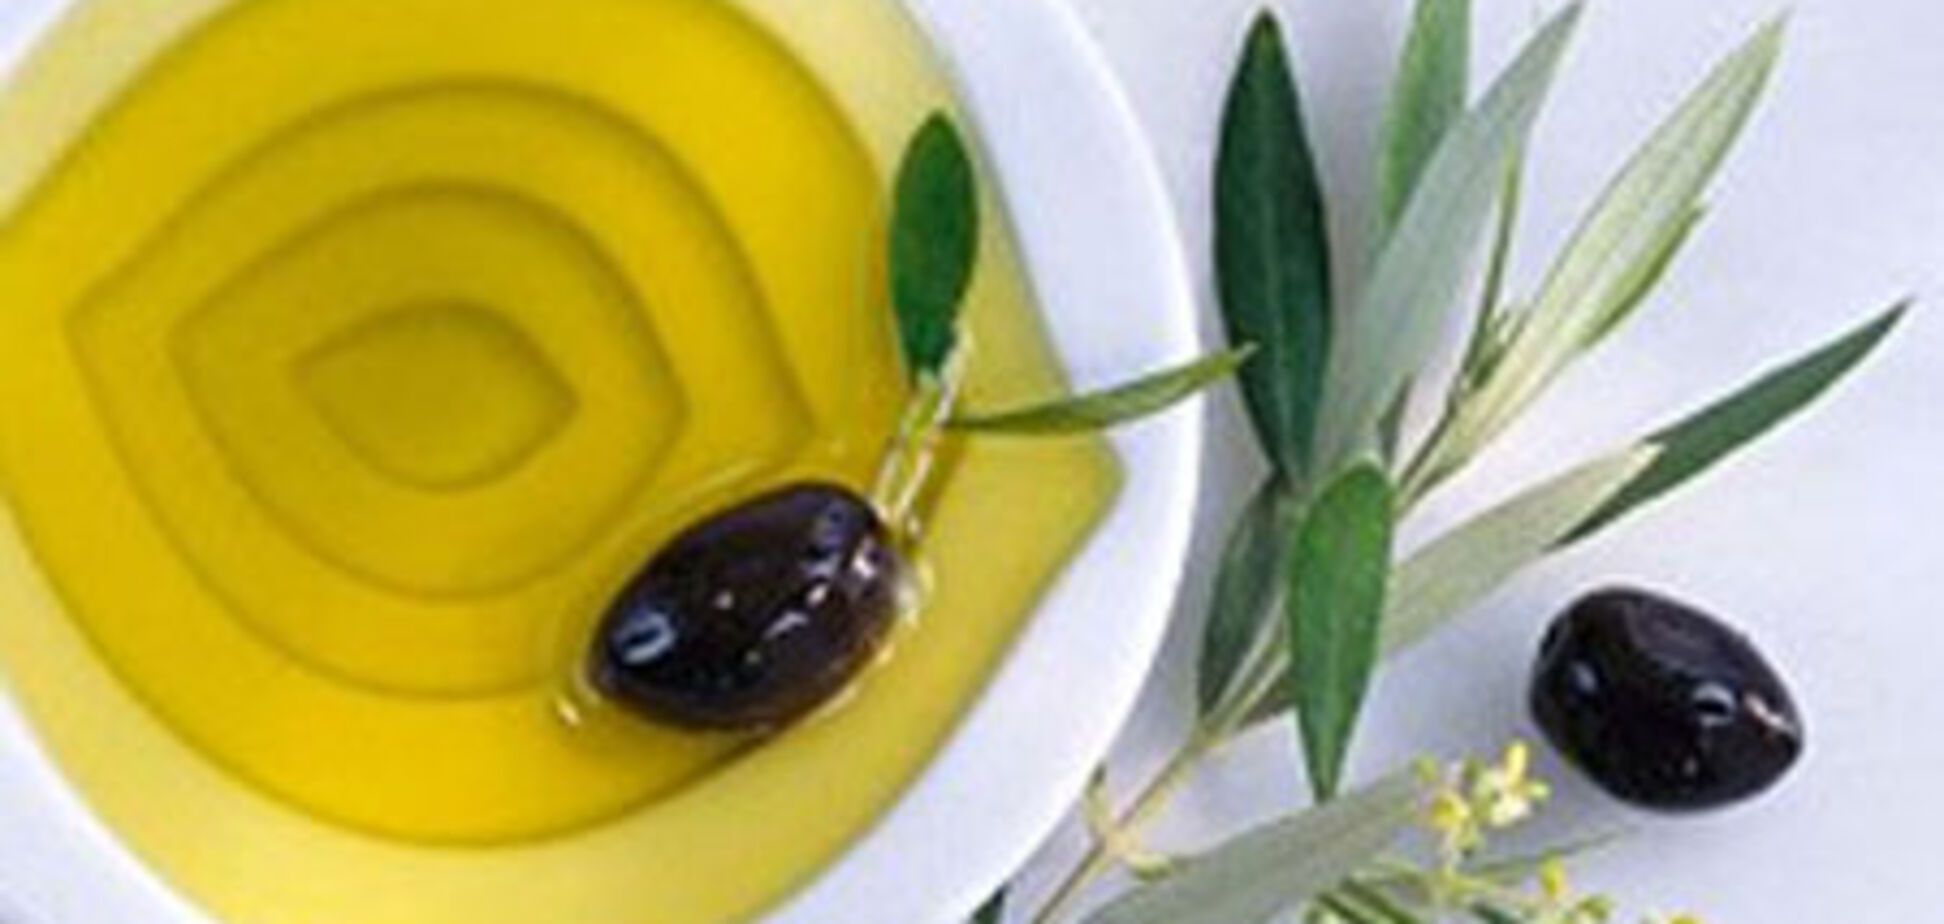 Лечебные свойства оливкового масла и оливок